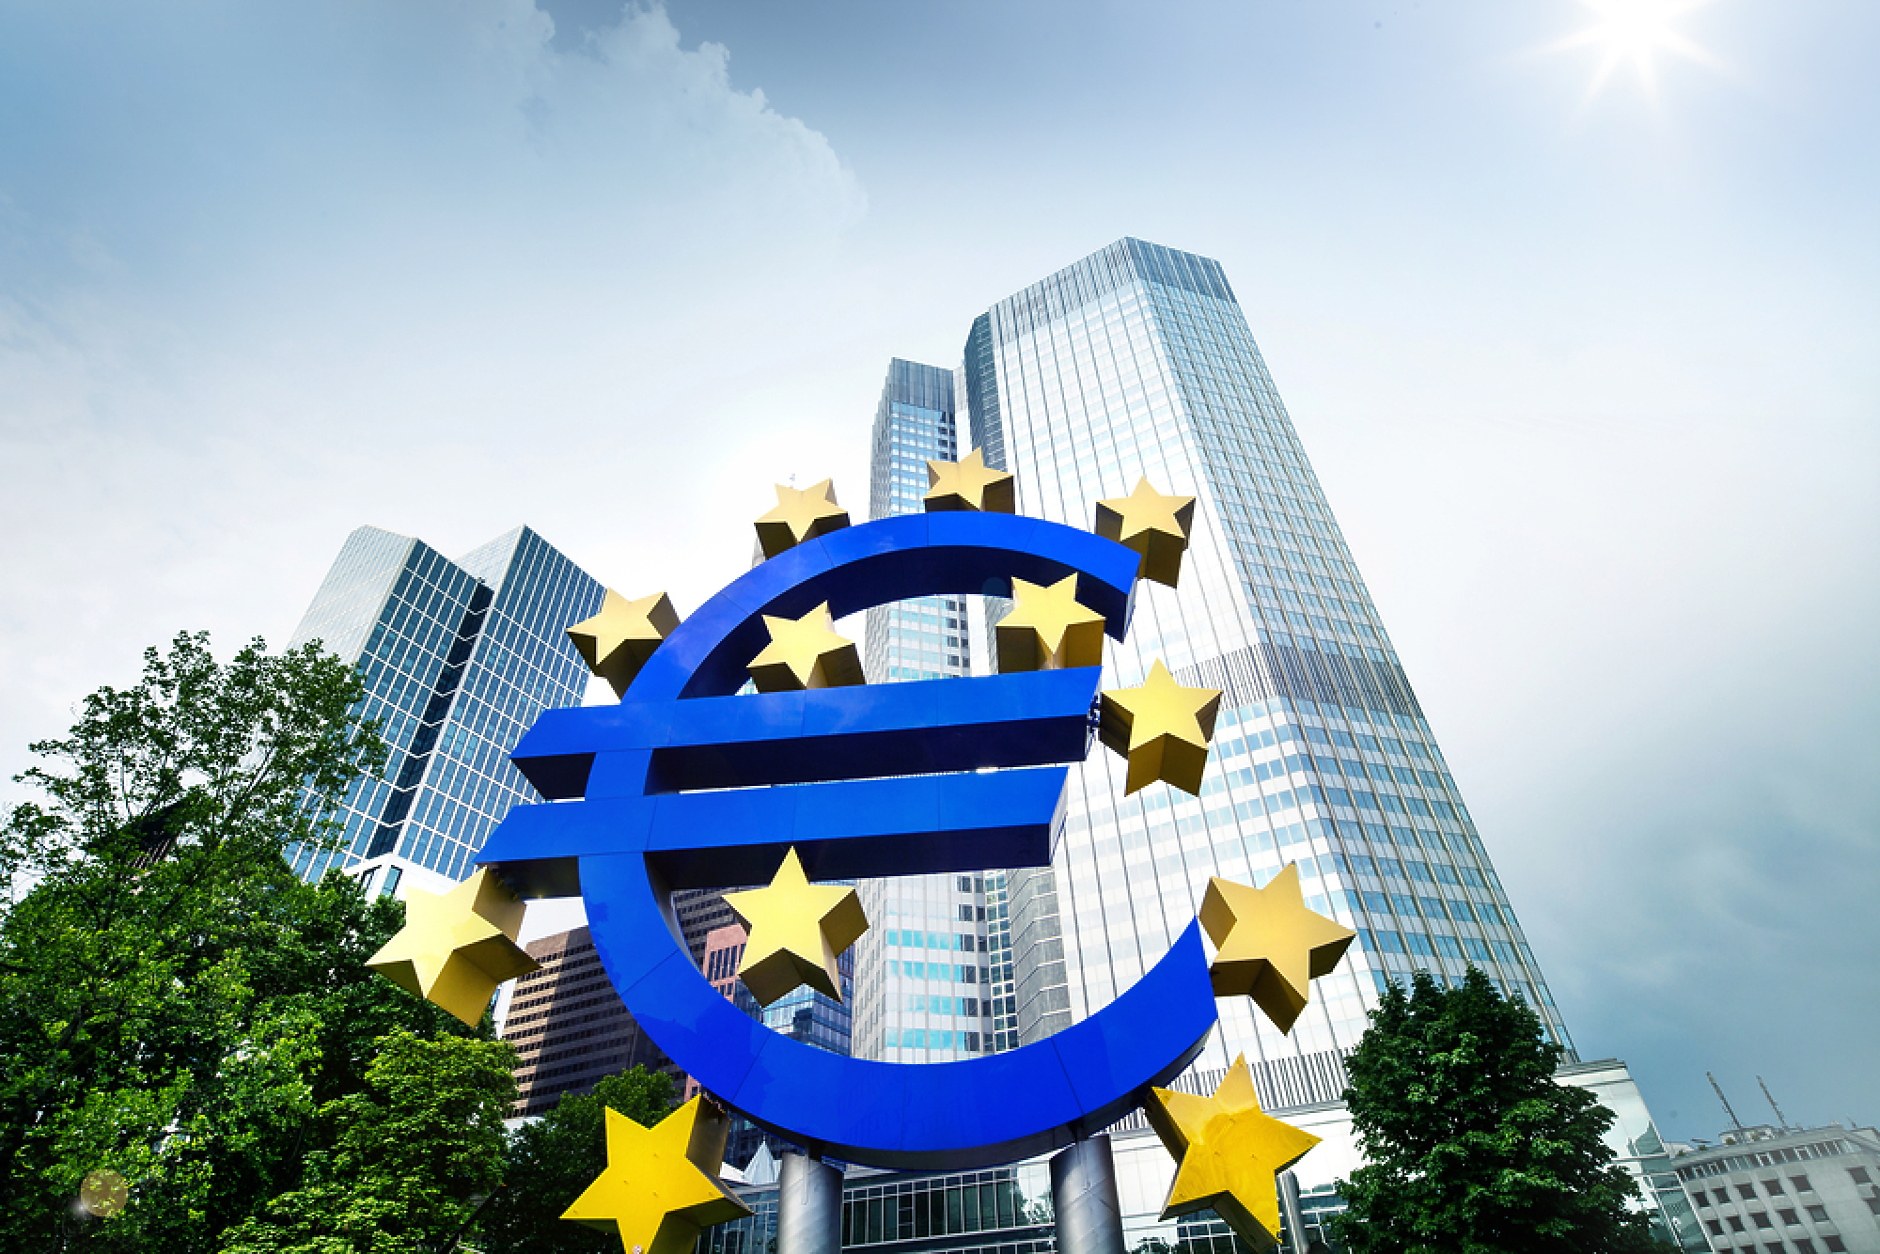 ЕЦБ отчете лек ръст на банковото кредитиране  в еврозоната през февруари